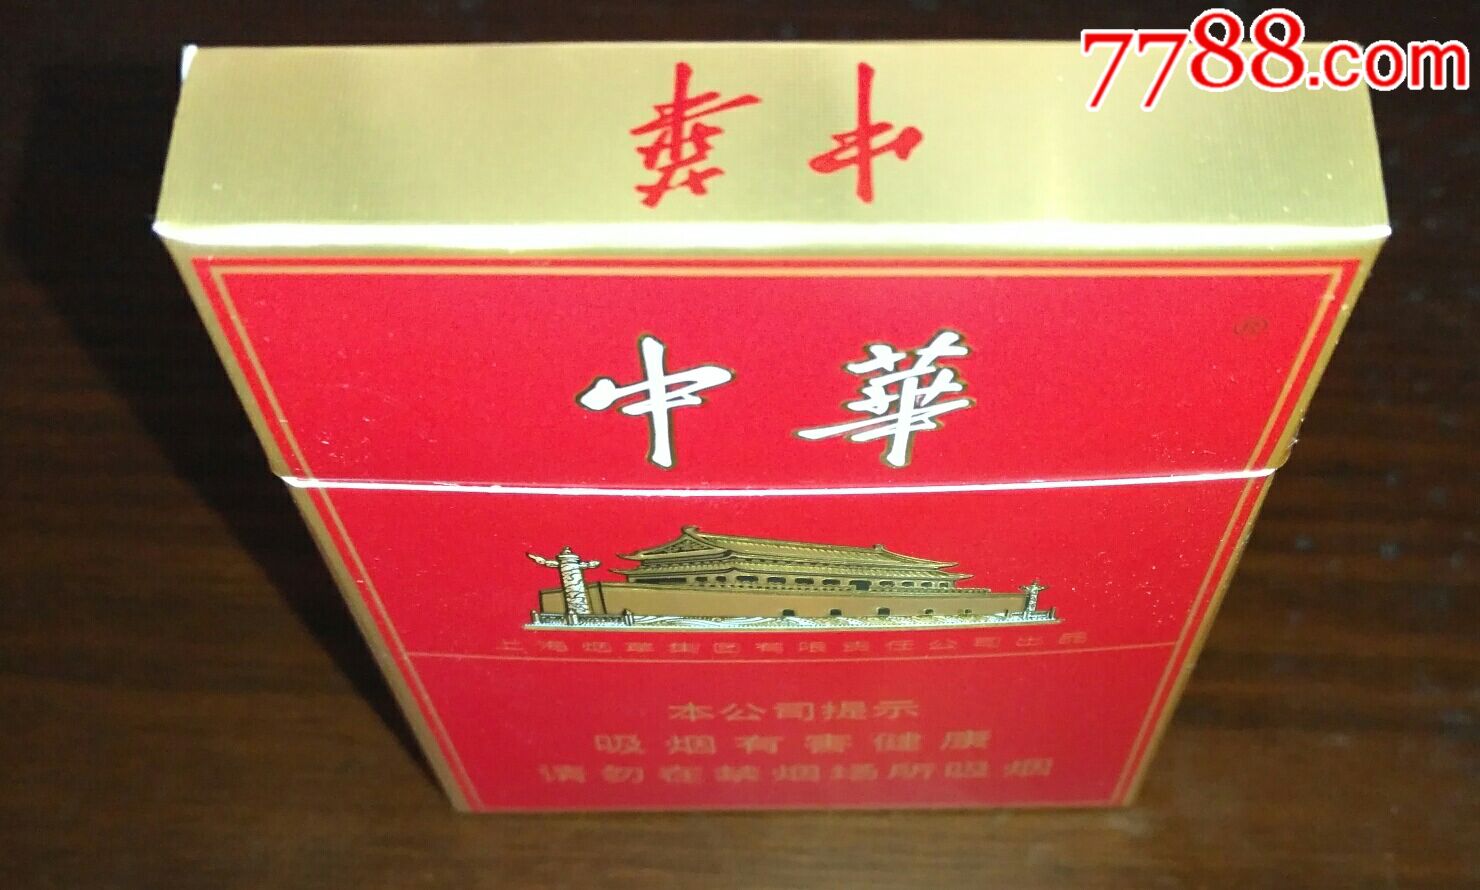 少见!中华(非卖品)3d烟盒.焦10mg20支